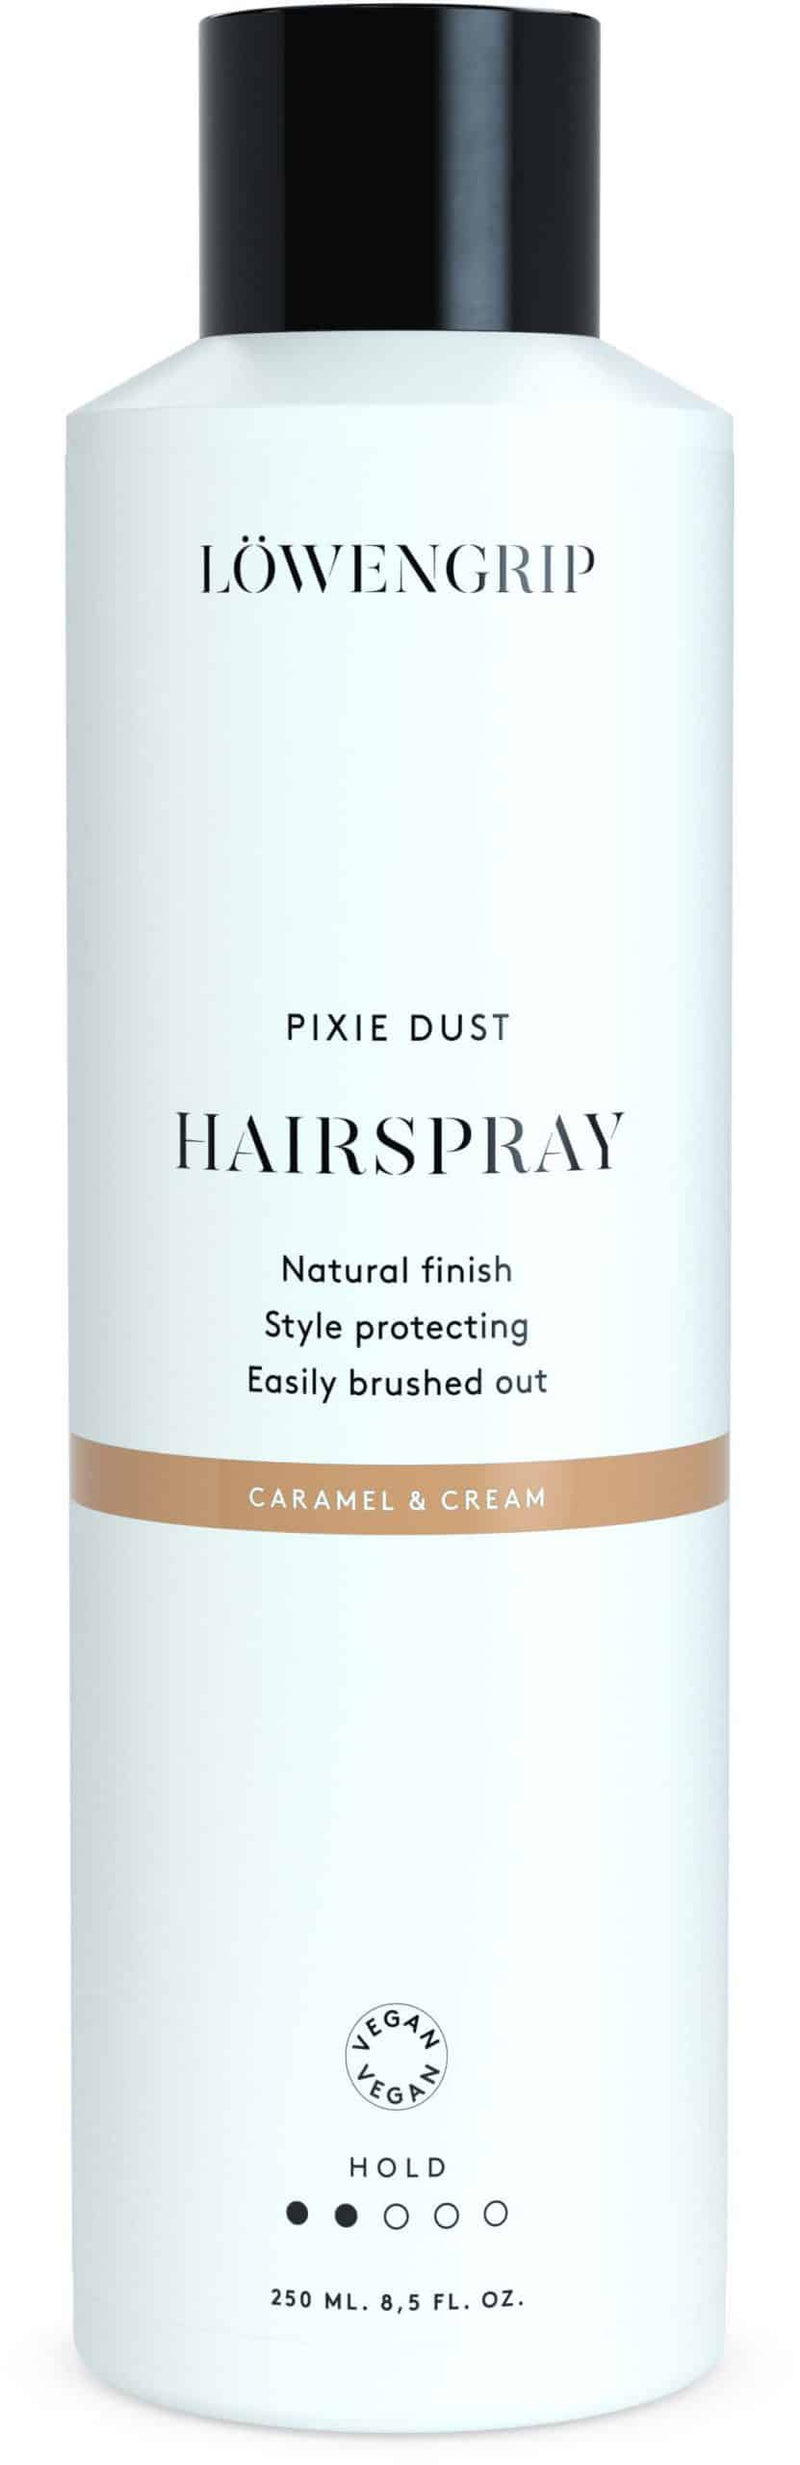 Löwengrip Pixie Dust Hairspray